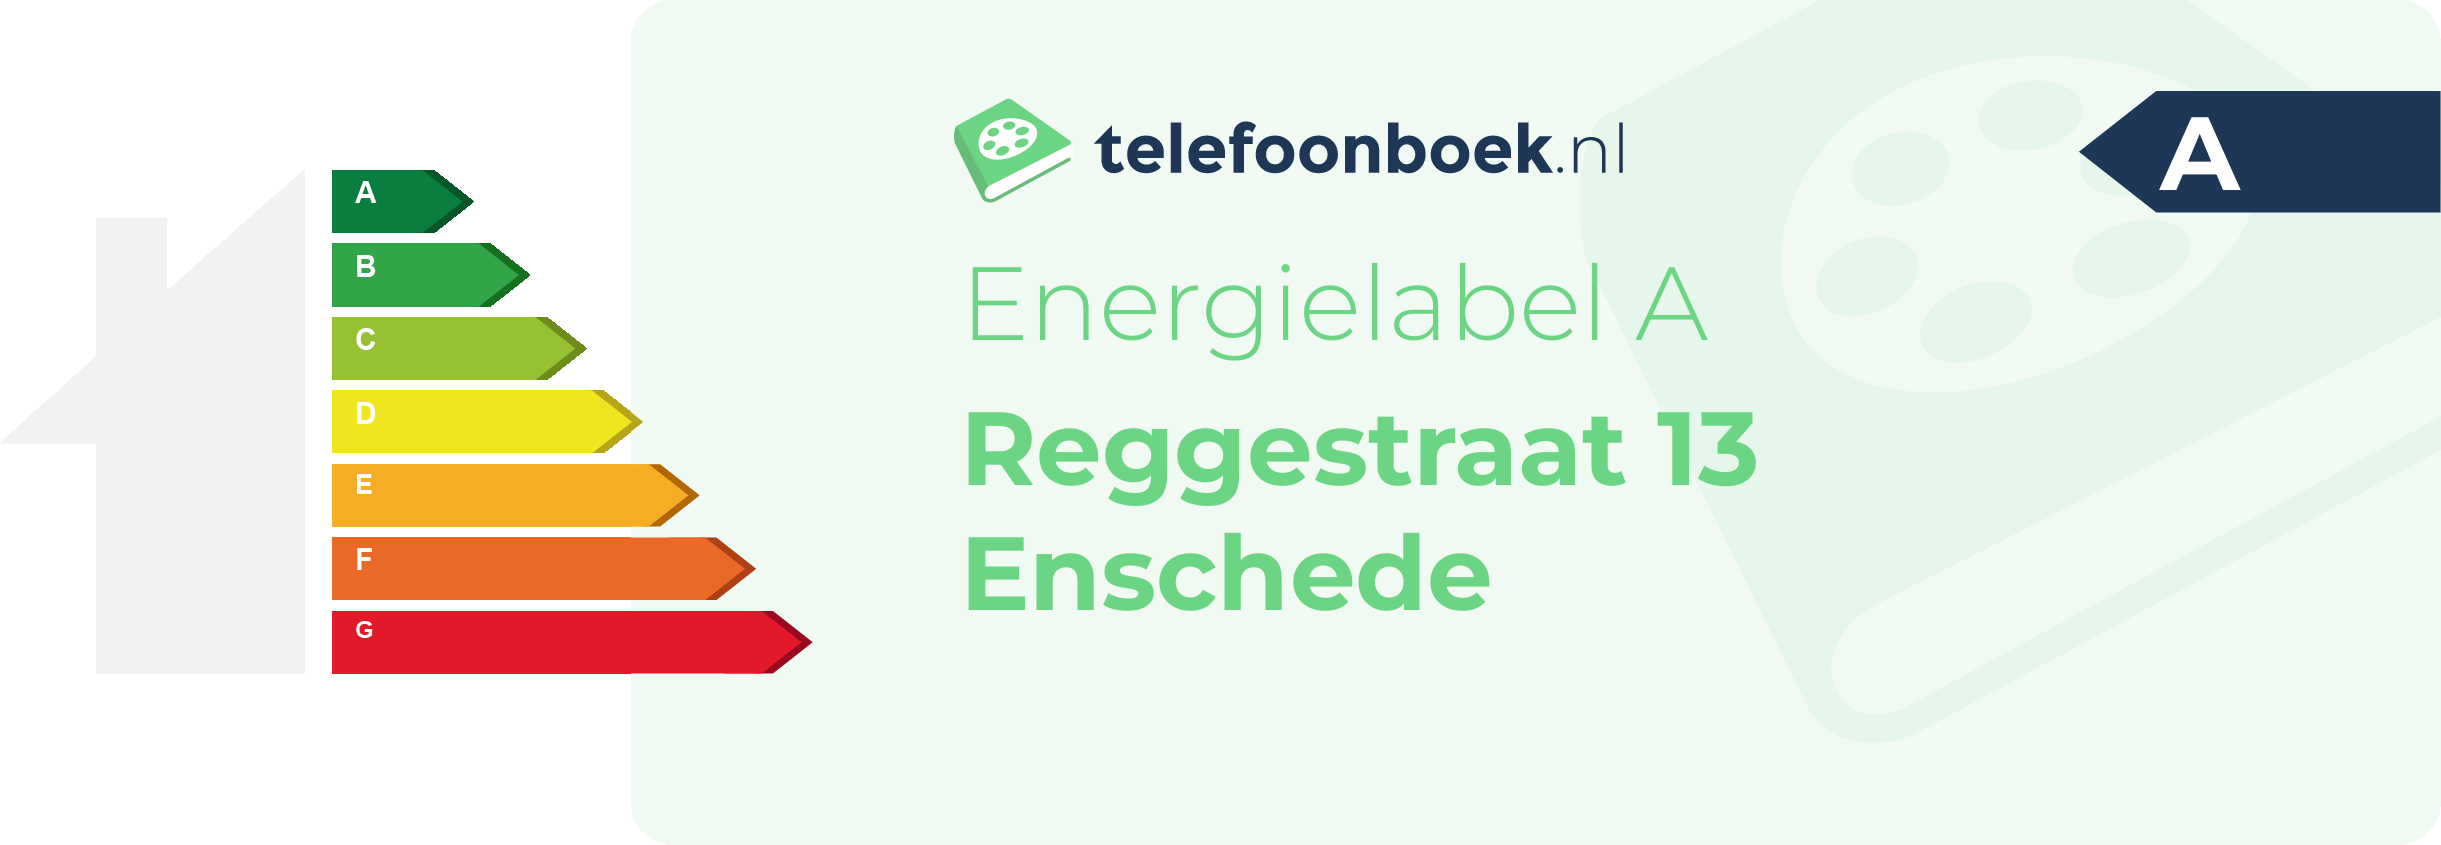 Energielabel Reggestraat 13 Enschede